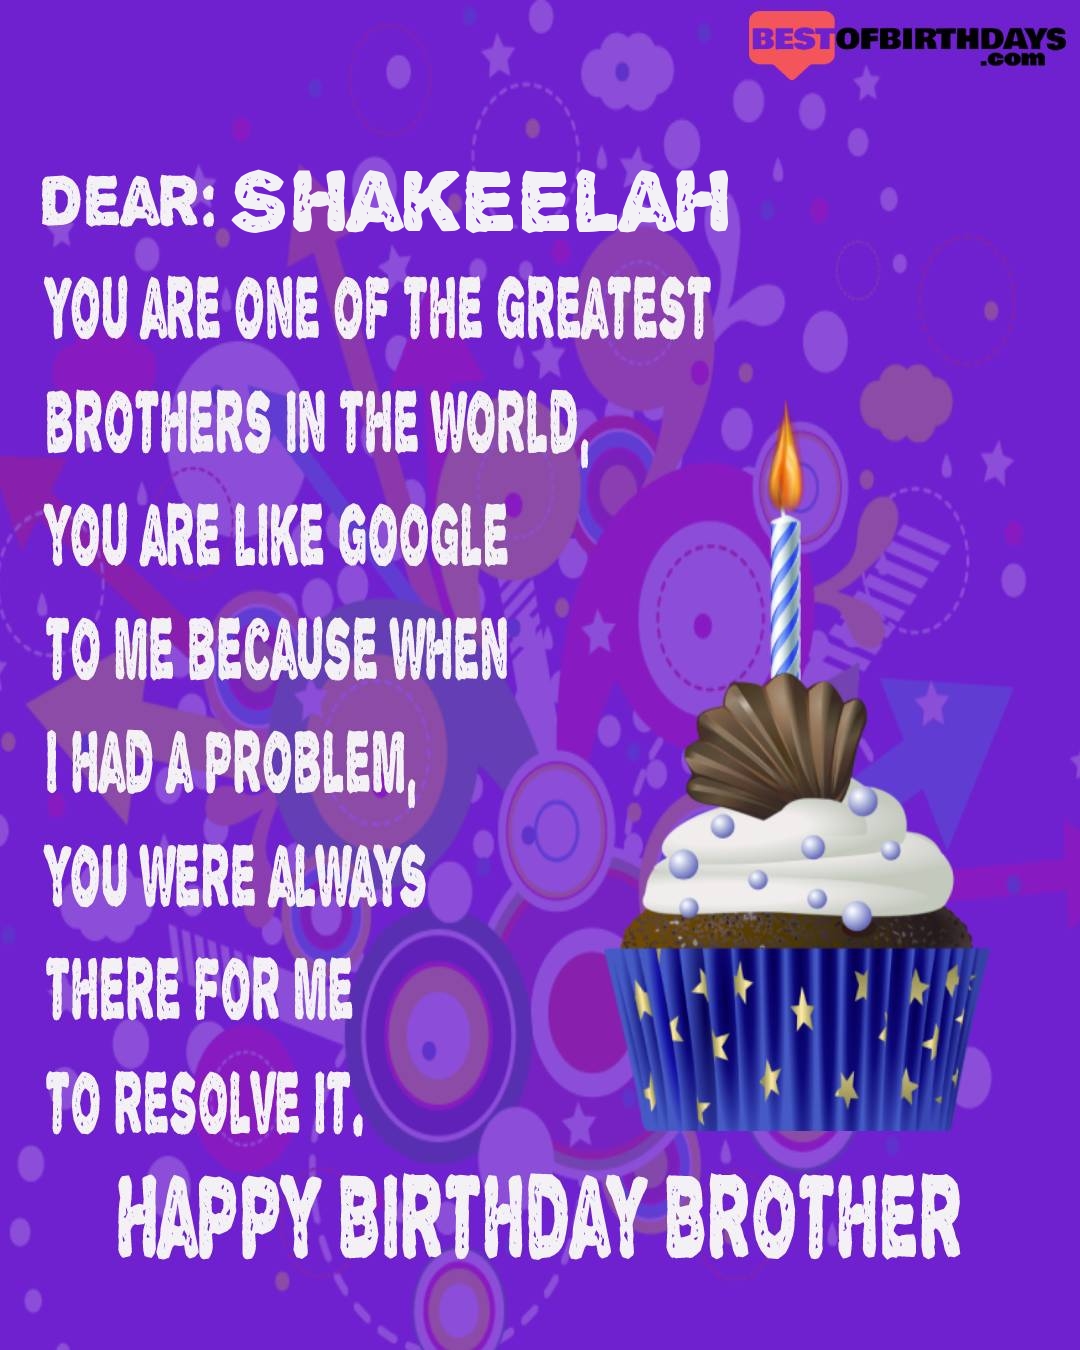 Happy birthday shakeelah bhai brother bro